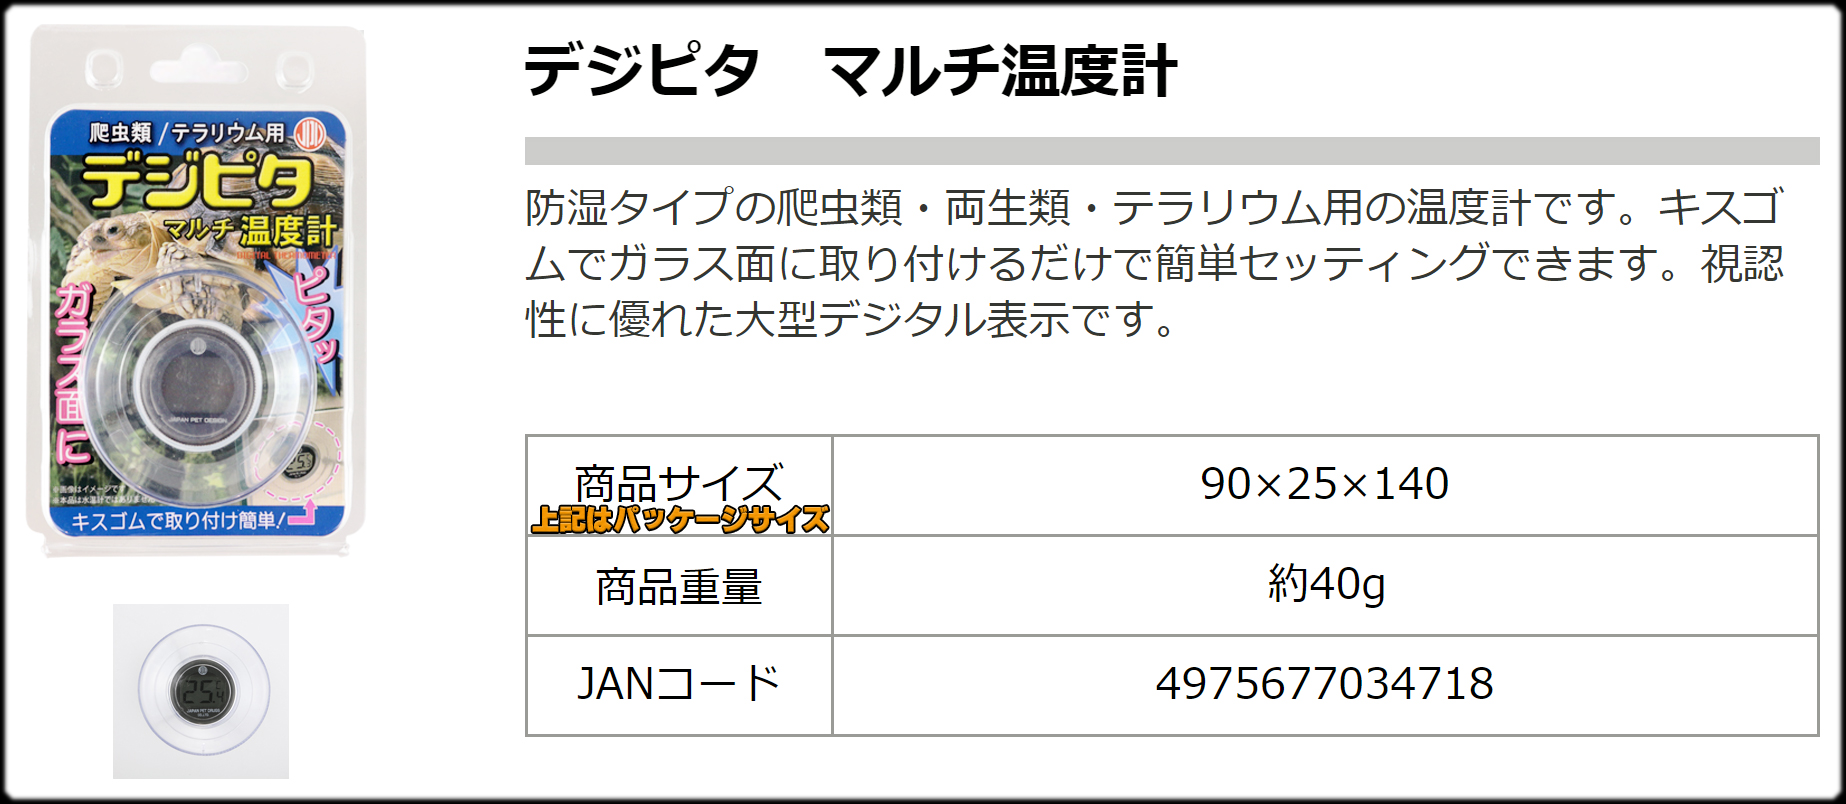 デジピタ マルチ温度計 日本動物薬品 デジタル温度計 販売 通販